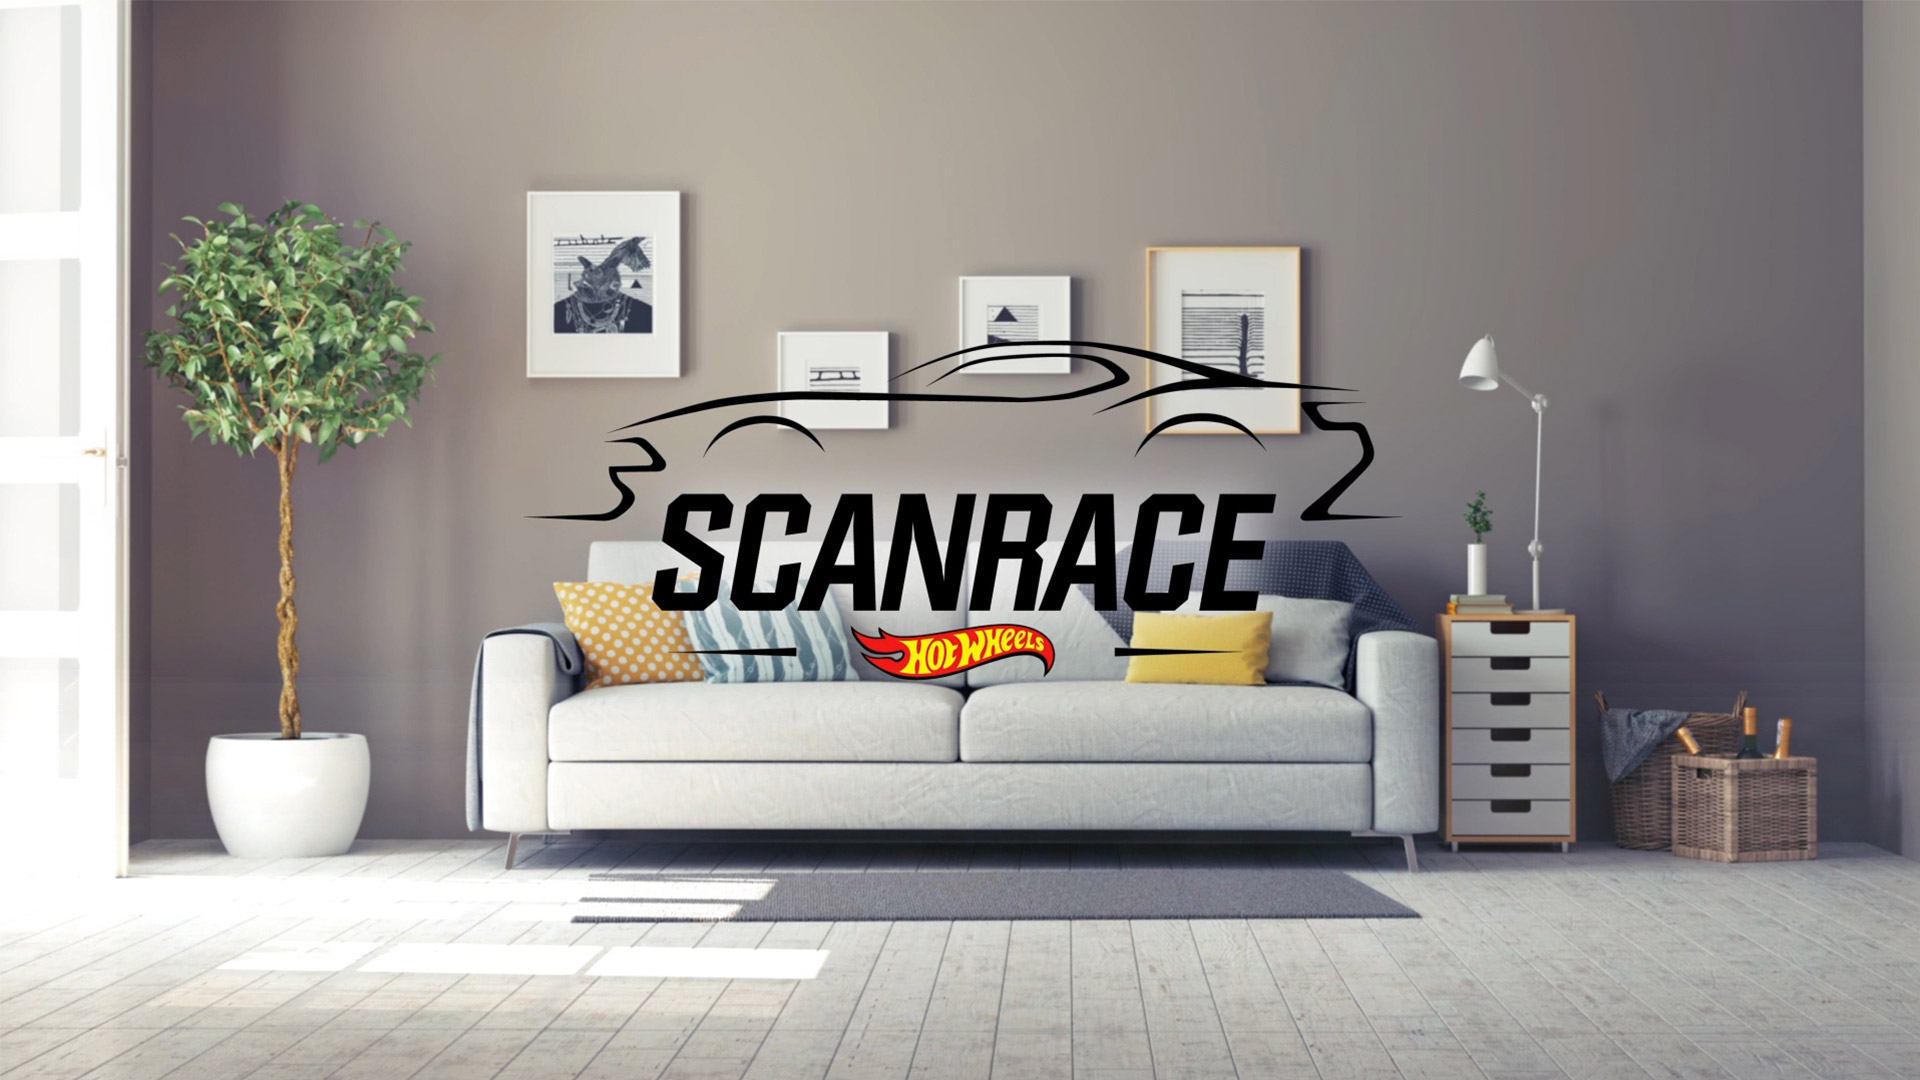 ScanRace